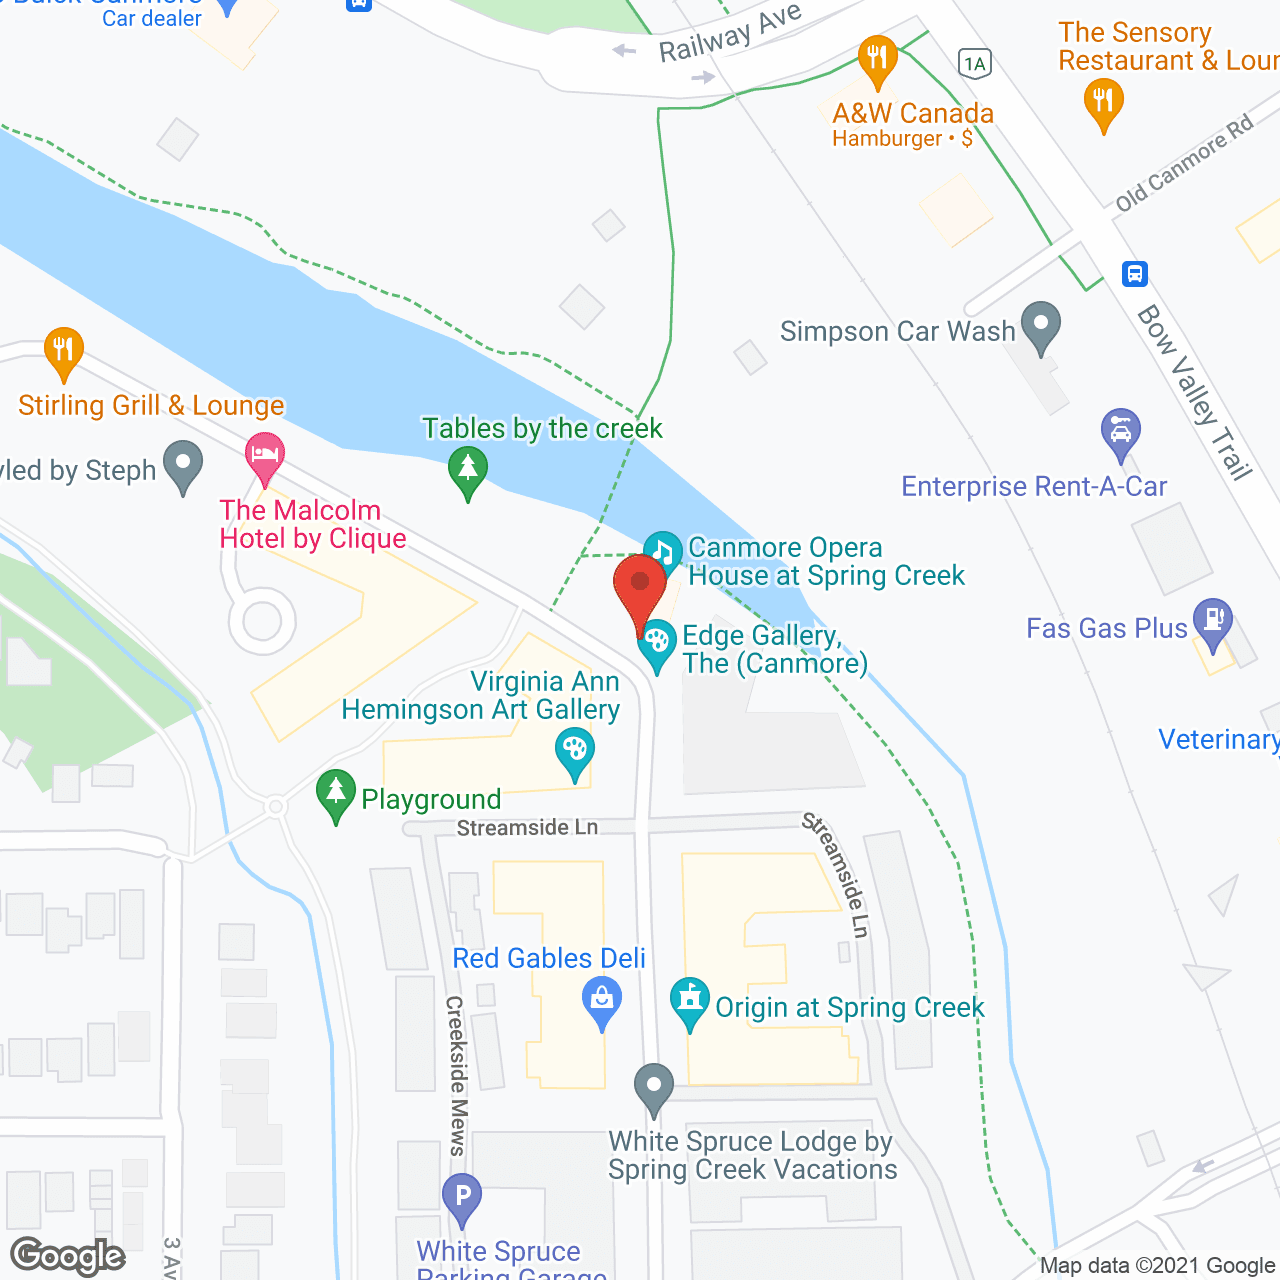 Origin at Spring Creek in google map